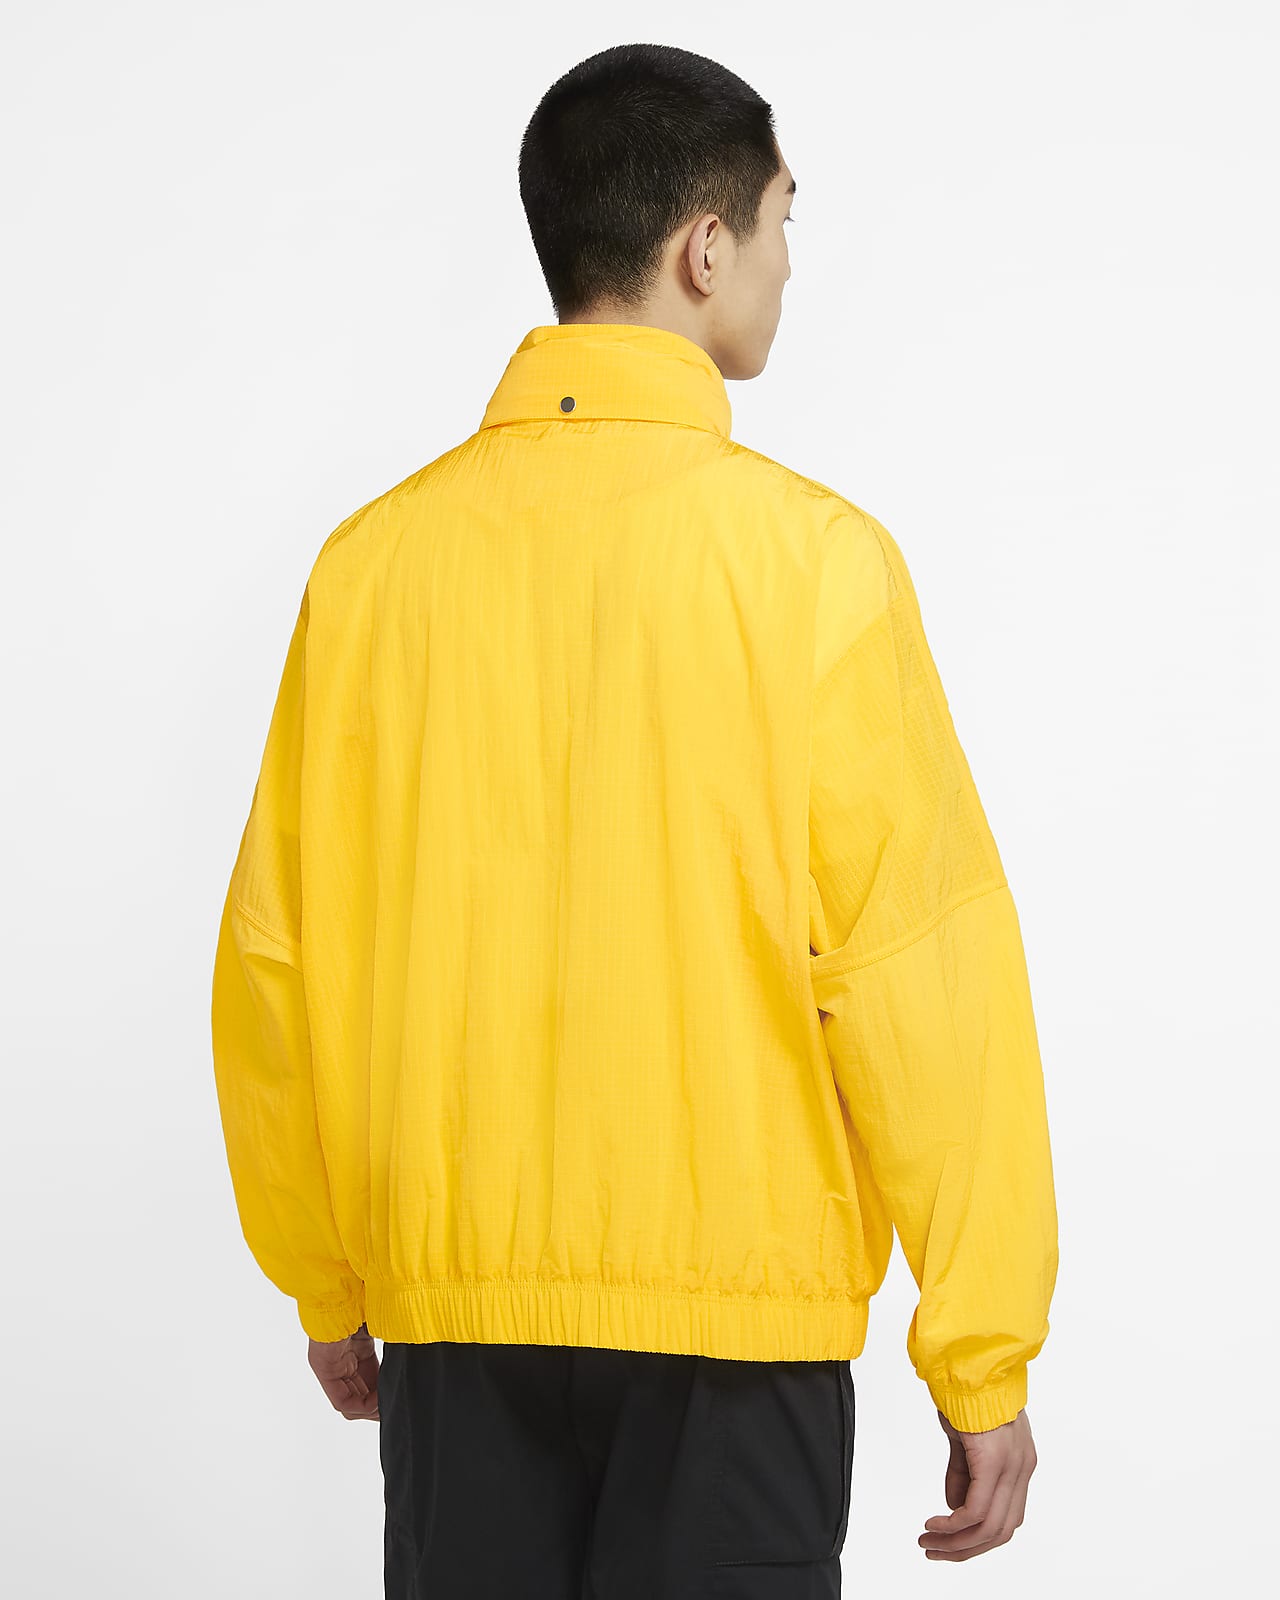 yellow jacket nike